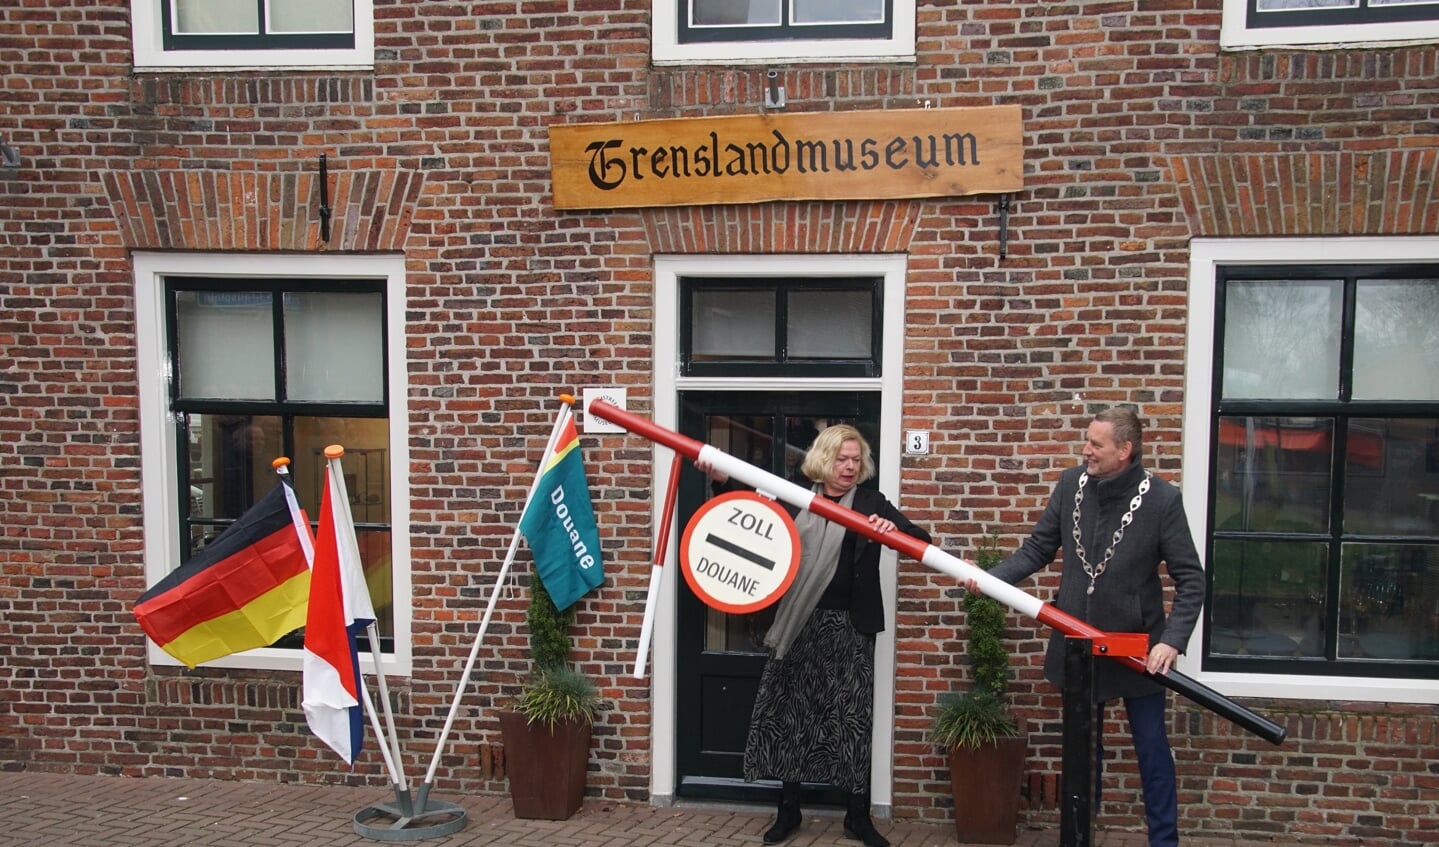 De officiële opening met Marijke Verschoor-Boele, voorzitter Grenslandmuseum en burgemeester Anton Stapelkamp. Foto: Frank Vinkenvleugel